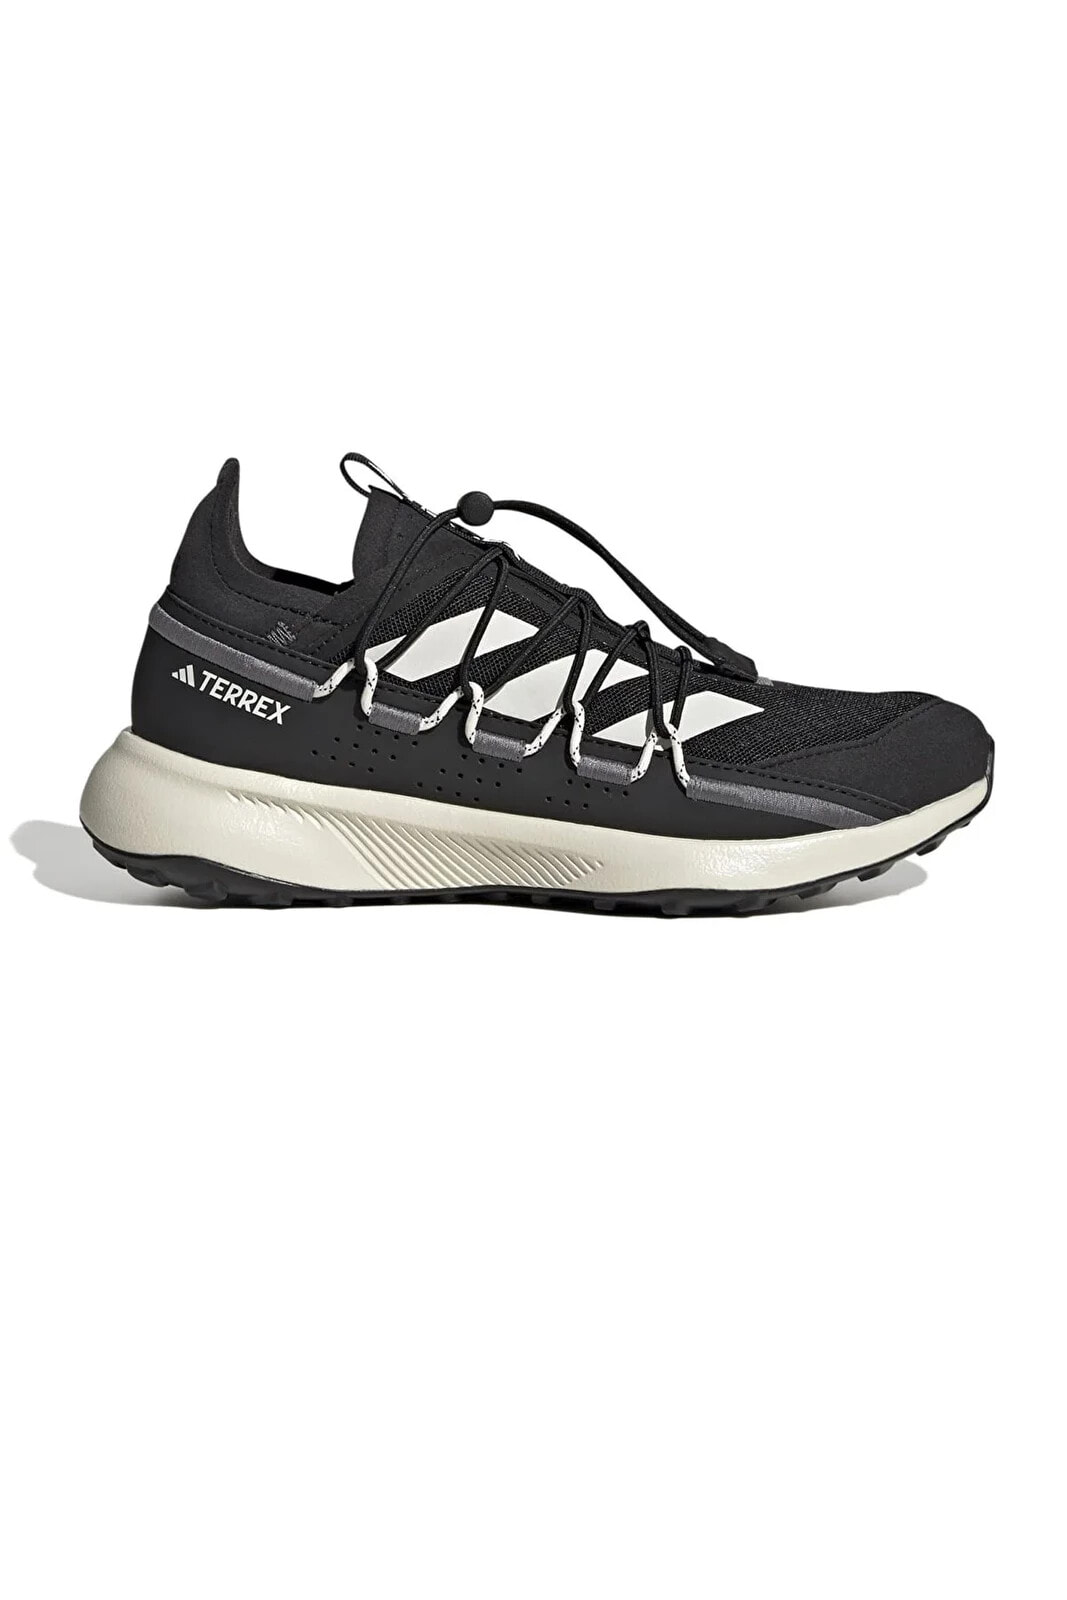 Hq0941-k Terrex Voyager 21 W Kadın Spor Ayakkabı Siyah